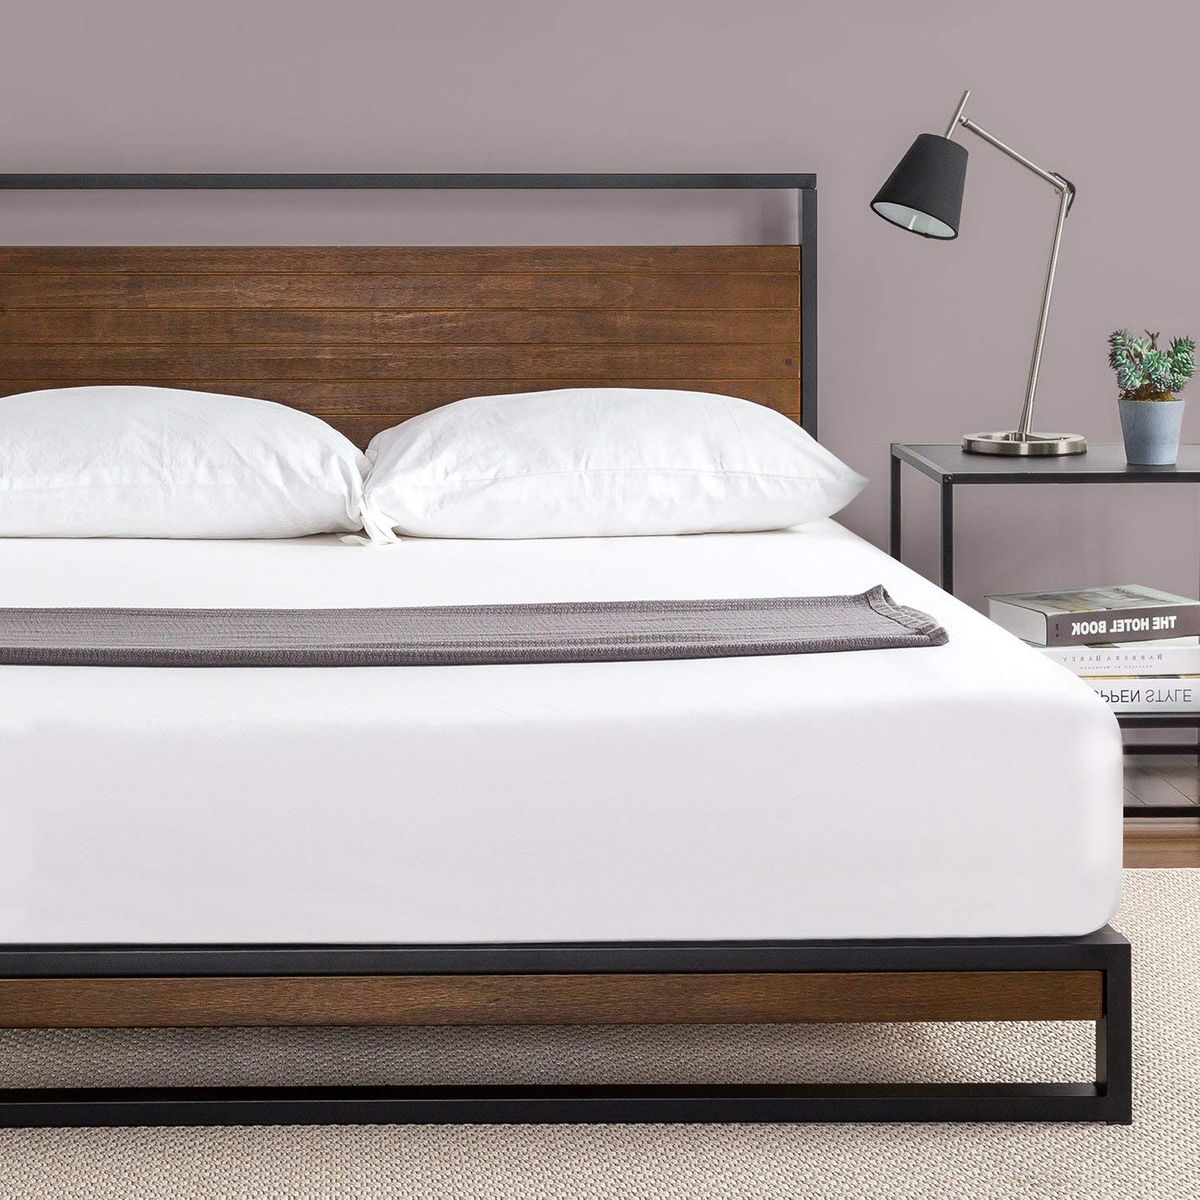 19 Best Metal Bed Frames 2020 The, King Size Steel Platform Bed Frame